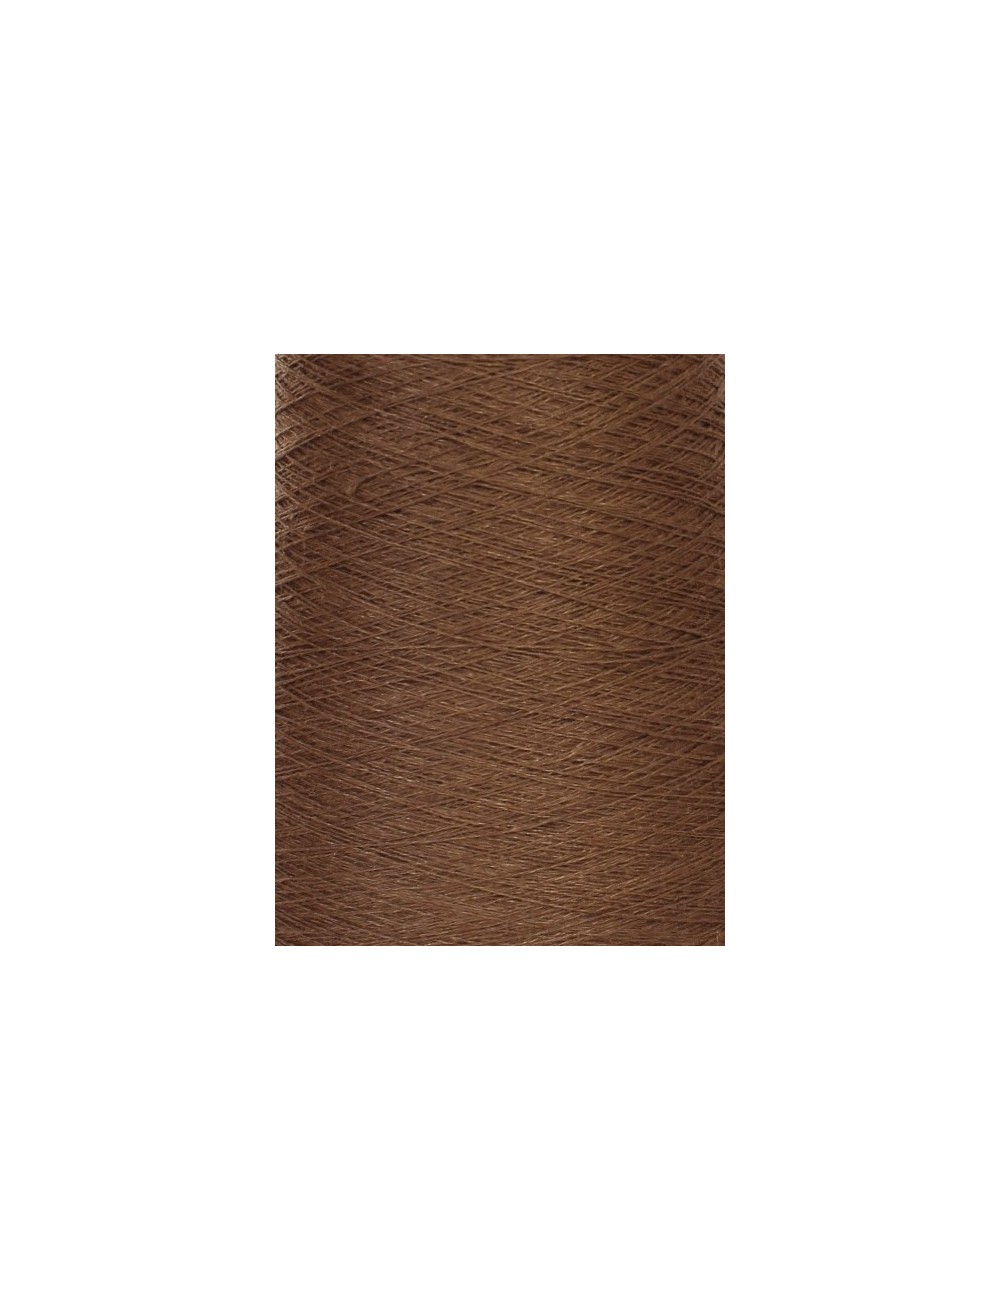 Hørgarn 11(28) klassisk brun farve